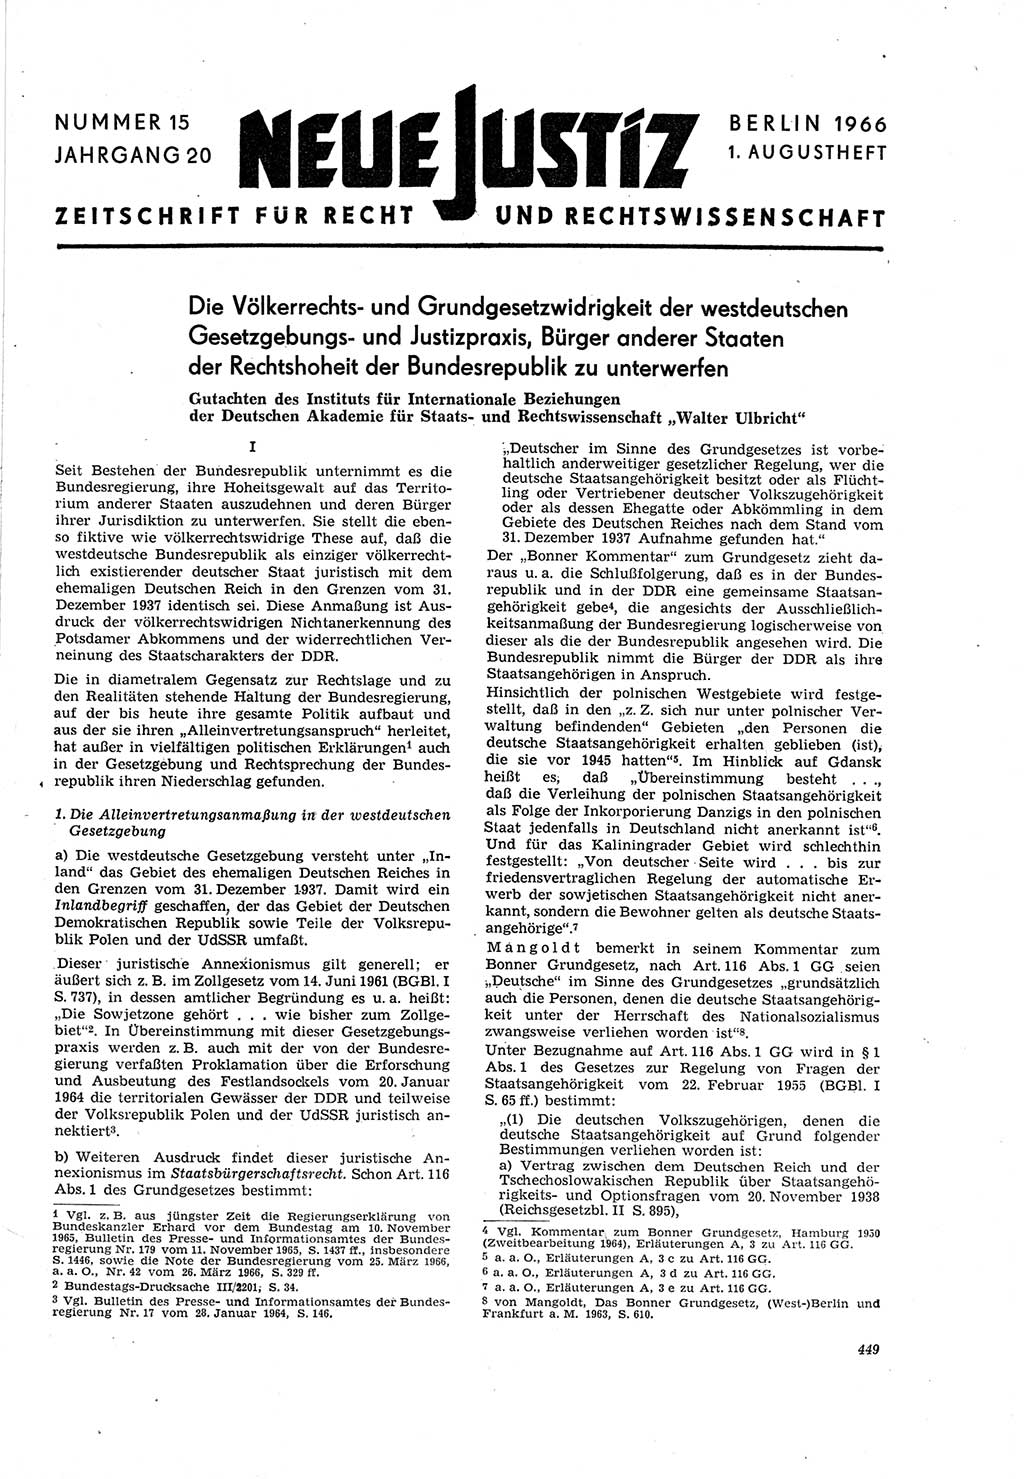 Neue Justiz (NJ), Zeitschrift für Recht und Rechtswissenschaft [Deutsche Demokratische Republik (DDR)], 20. Jahrgang 1966, Seite 449 (NJ DDR 1966, S. 449)